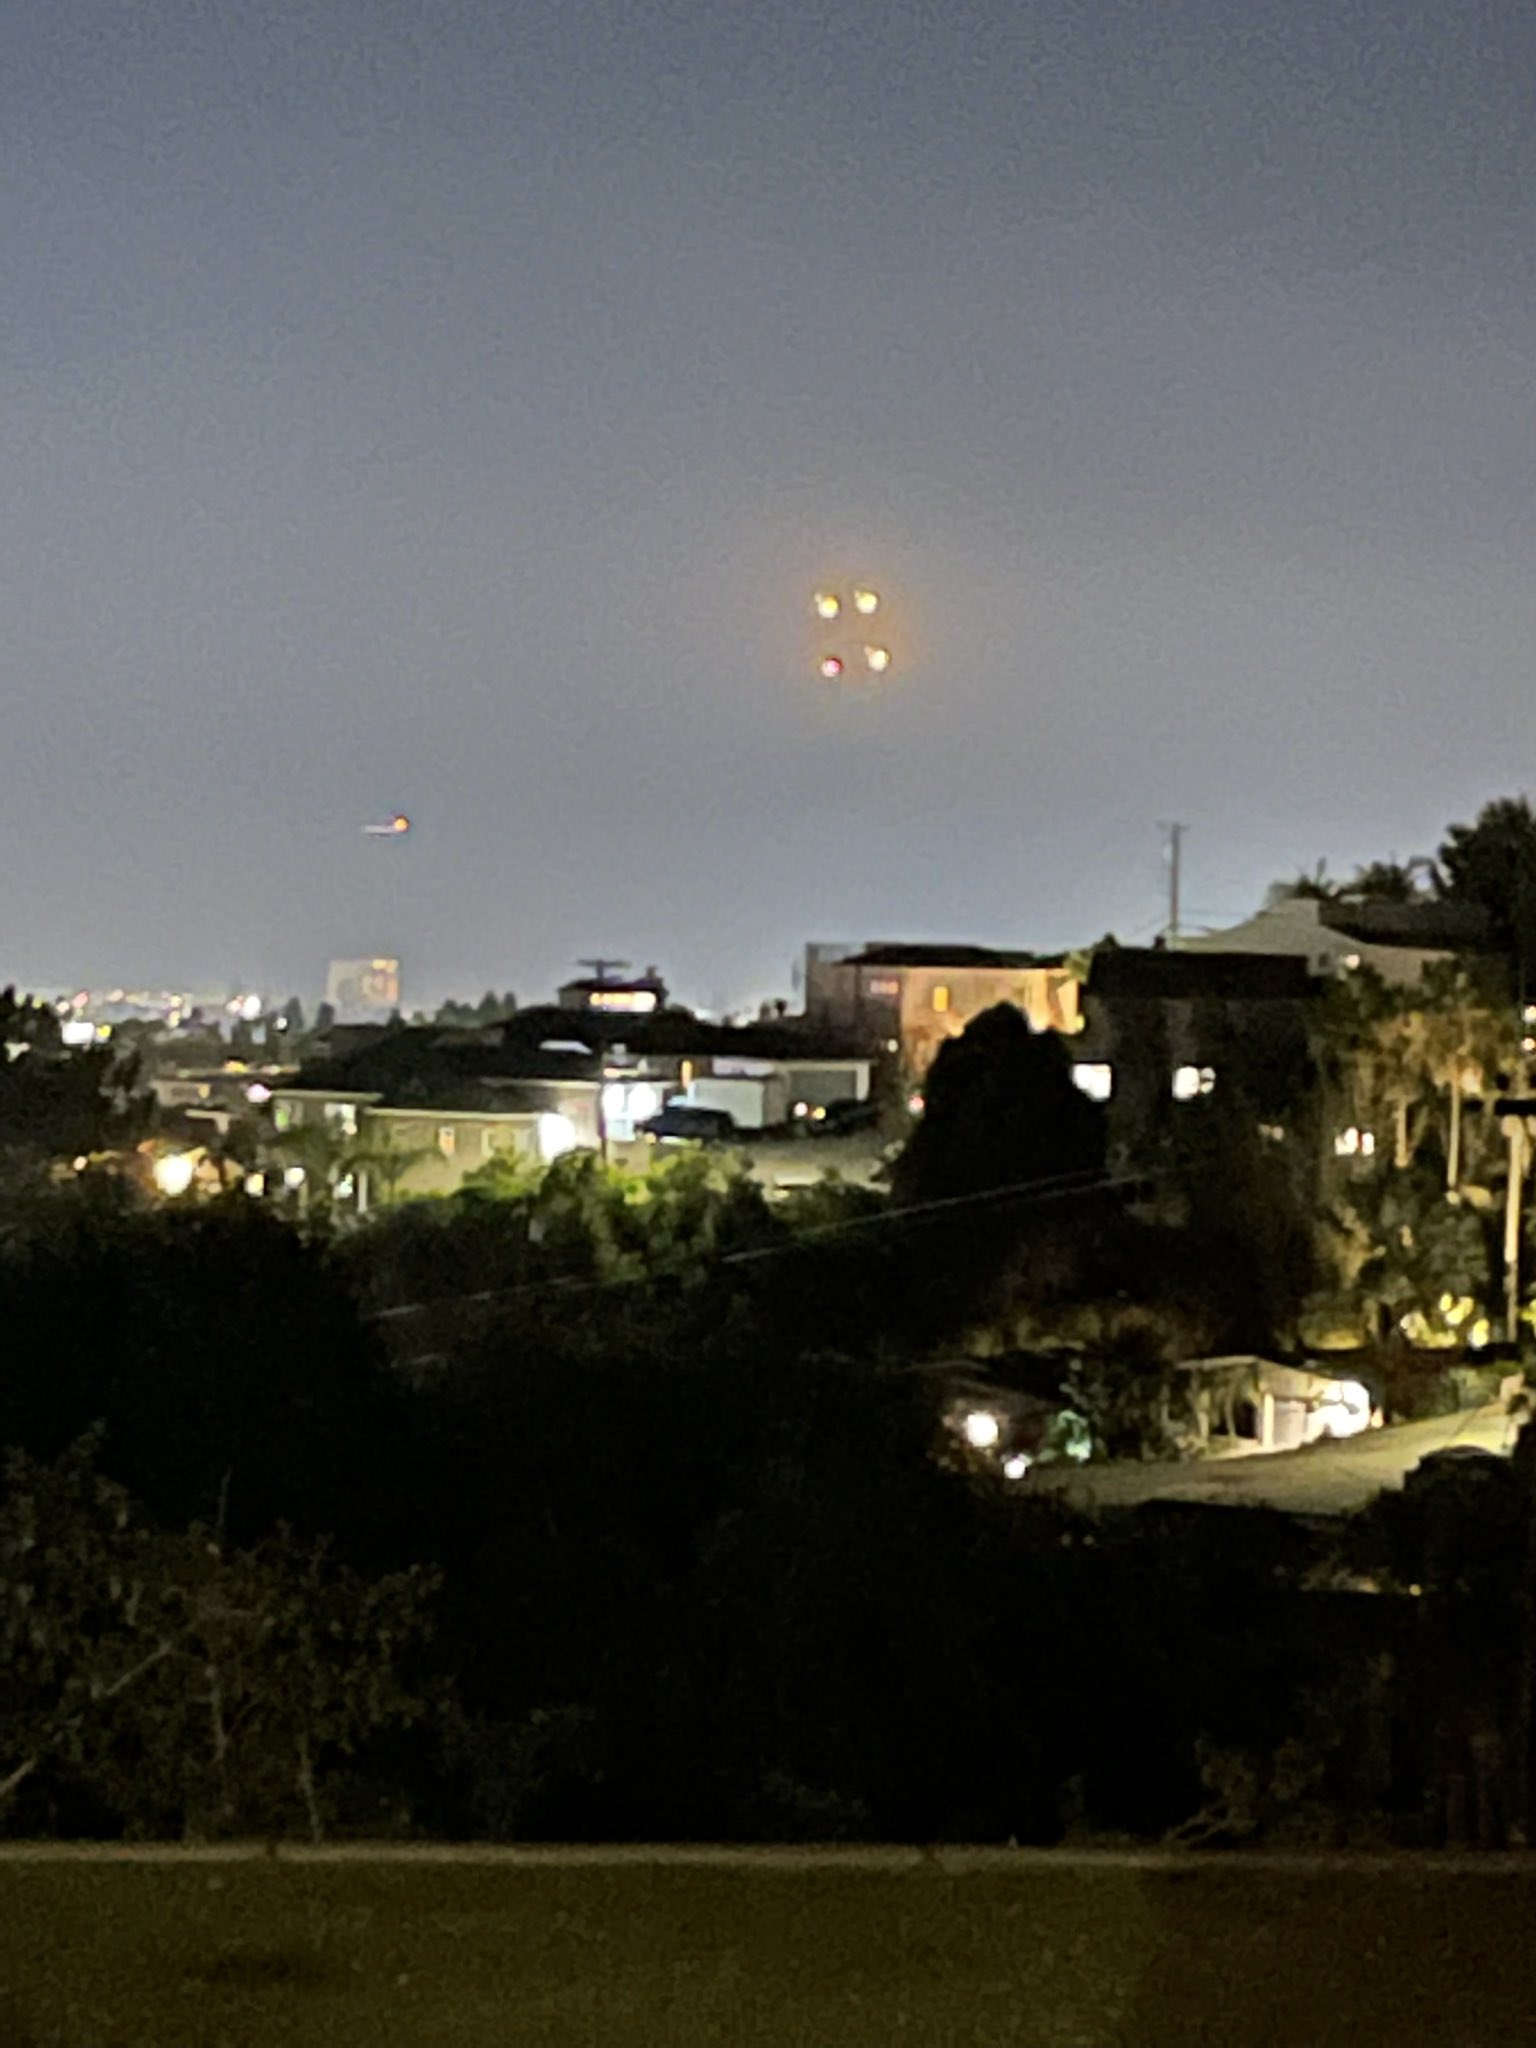 UFO event San Diego last night FWUIti4UUAALqcA?format=jpg&name=large